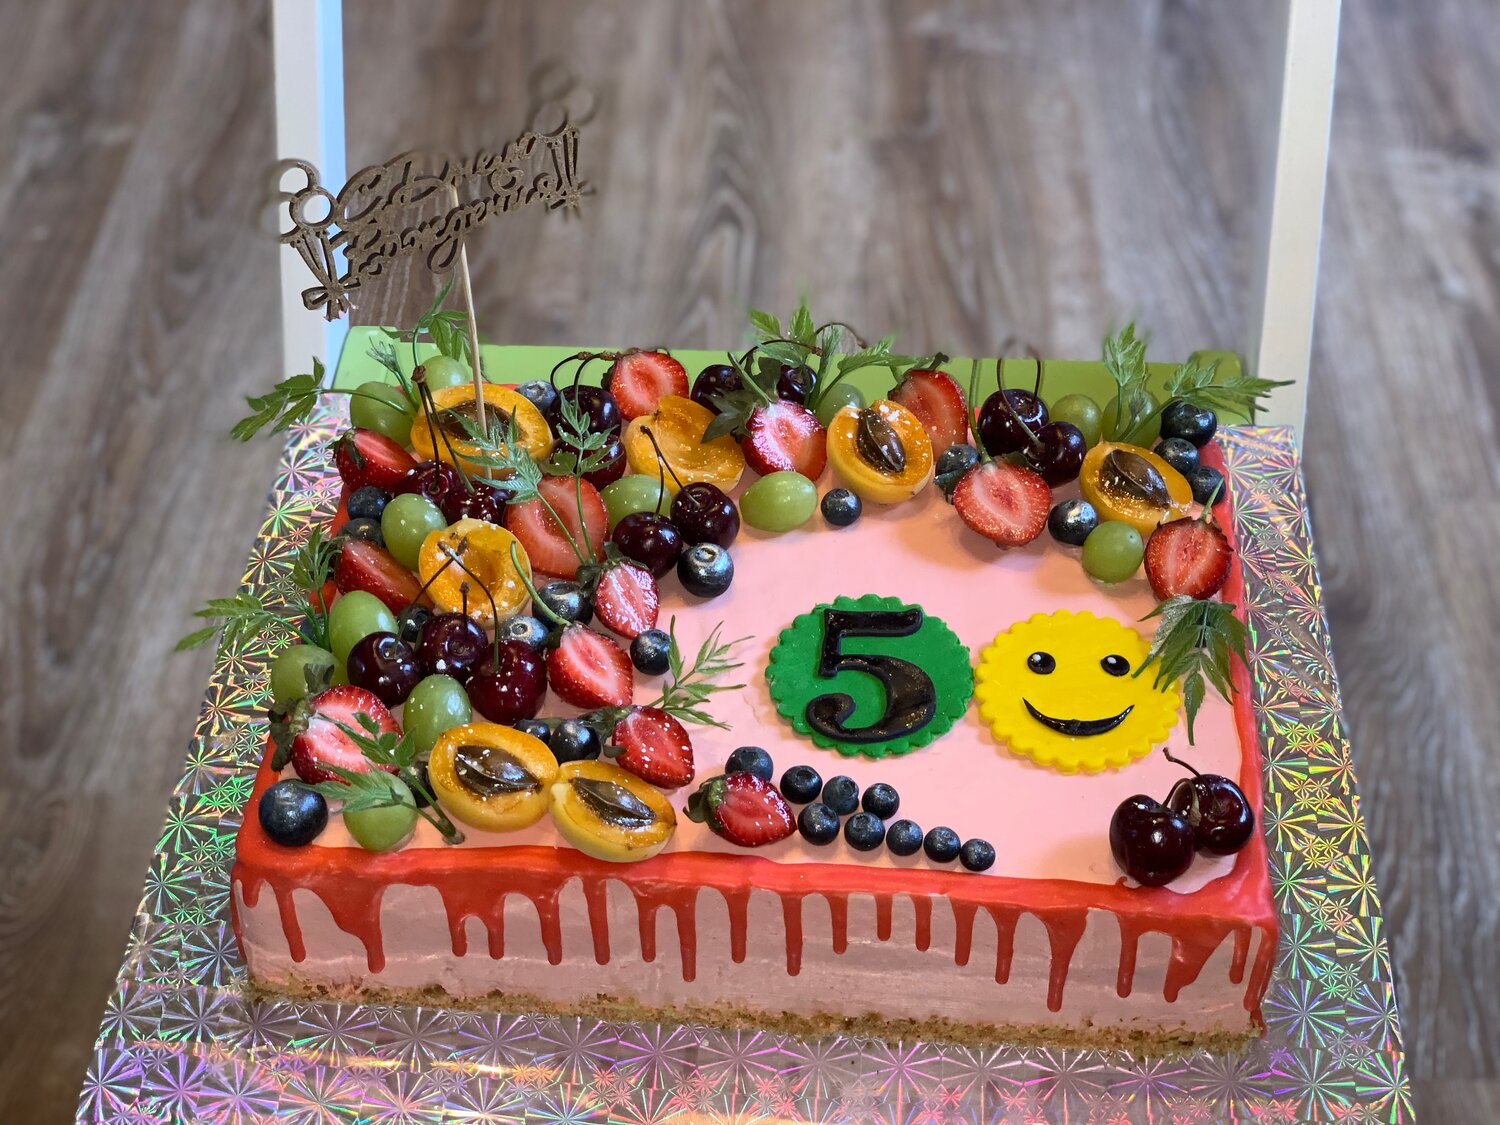 Заказать торт на день рождения ребенку в Красногорске: 82 кондитера с  отзывами и ценами на Яндекс Услугах.